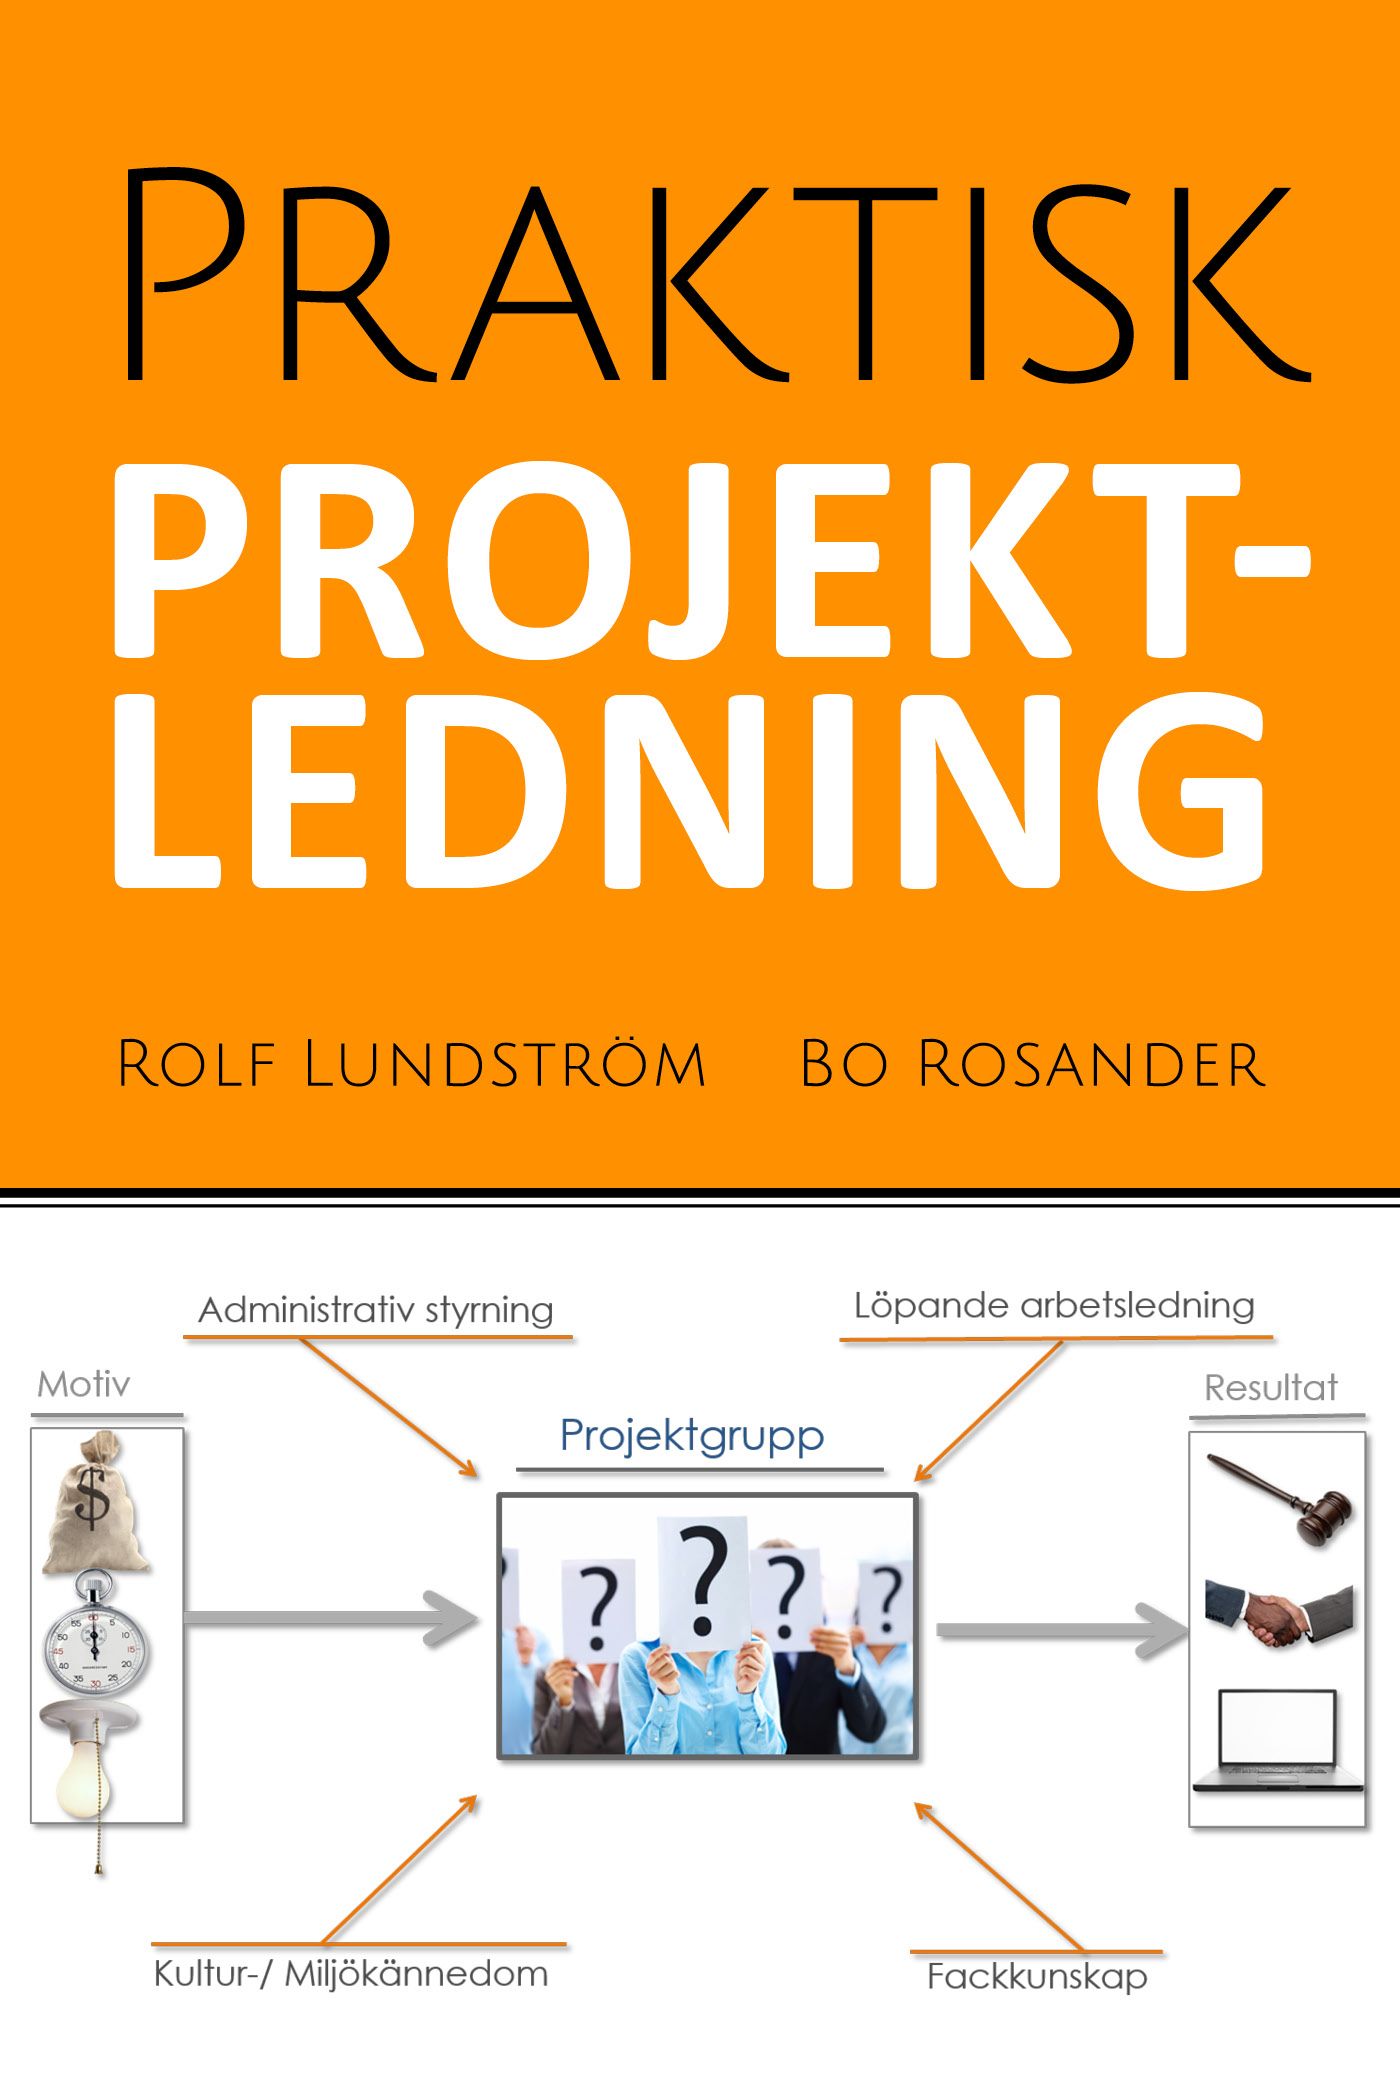 Praktisk projektledning, e-bok av Rolf Lundström, Bo Rosander